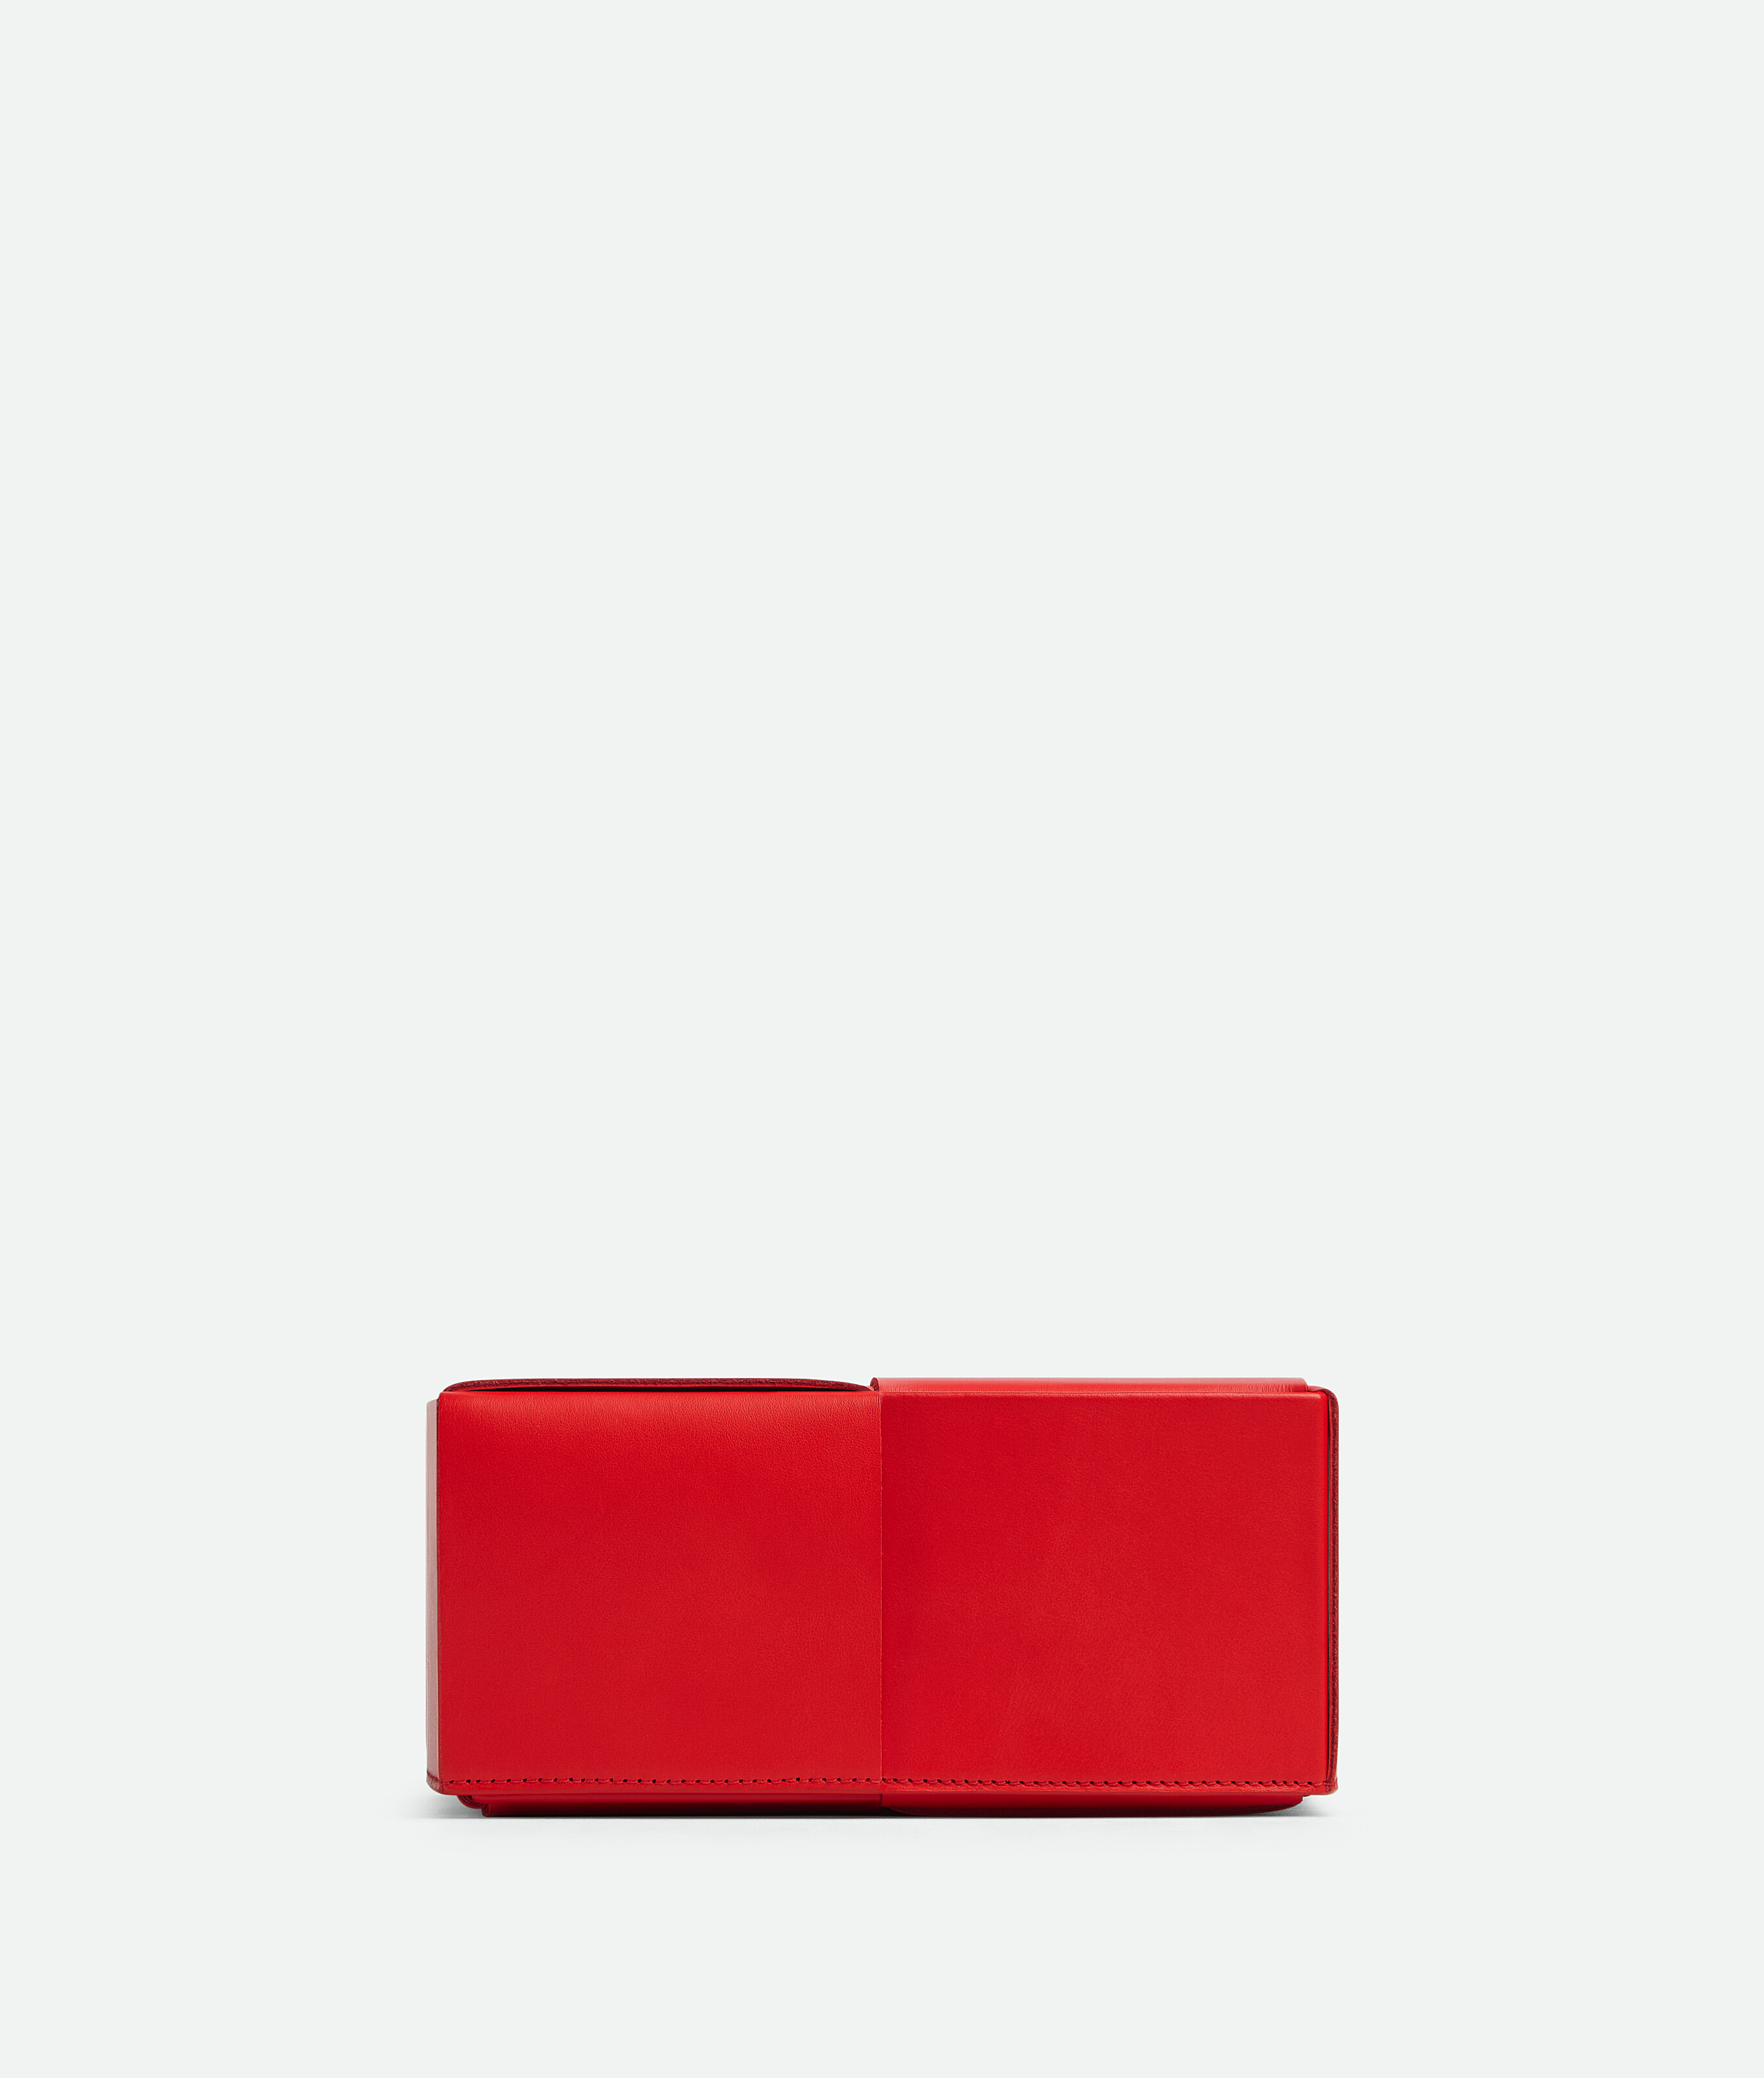 Bottega Veneta Cassette Box In Red